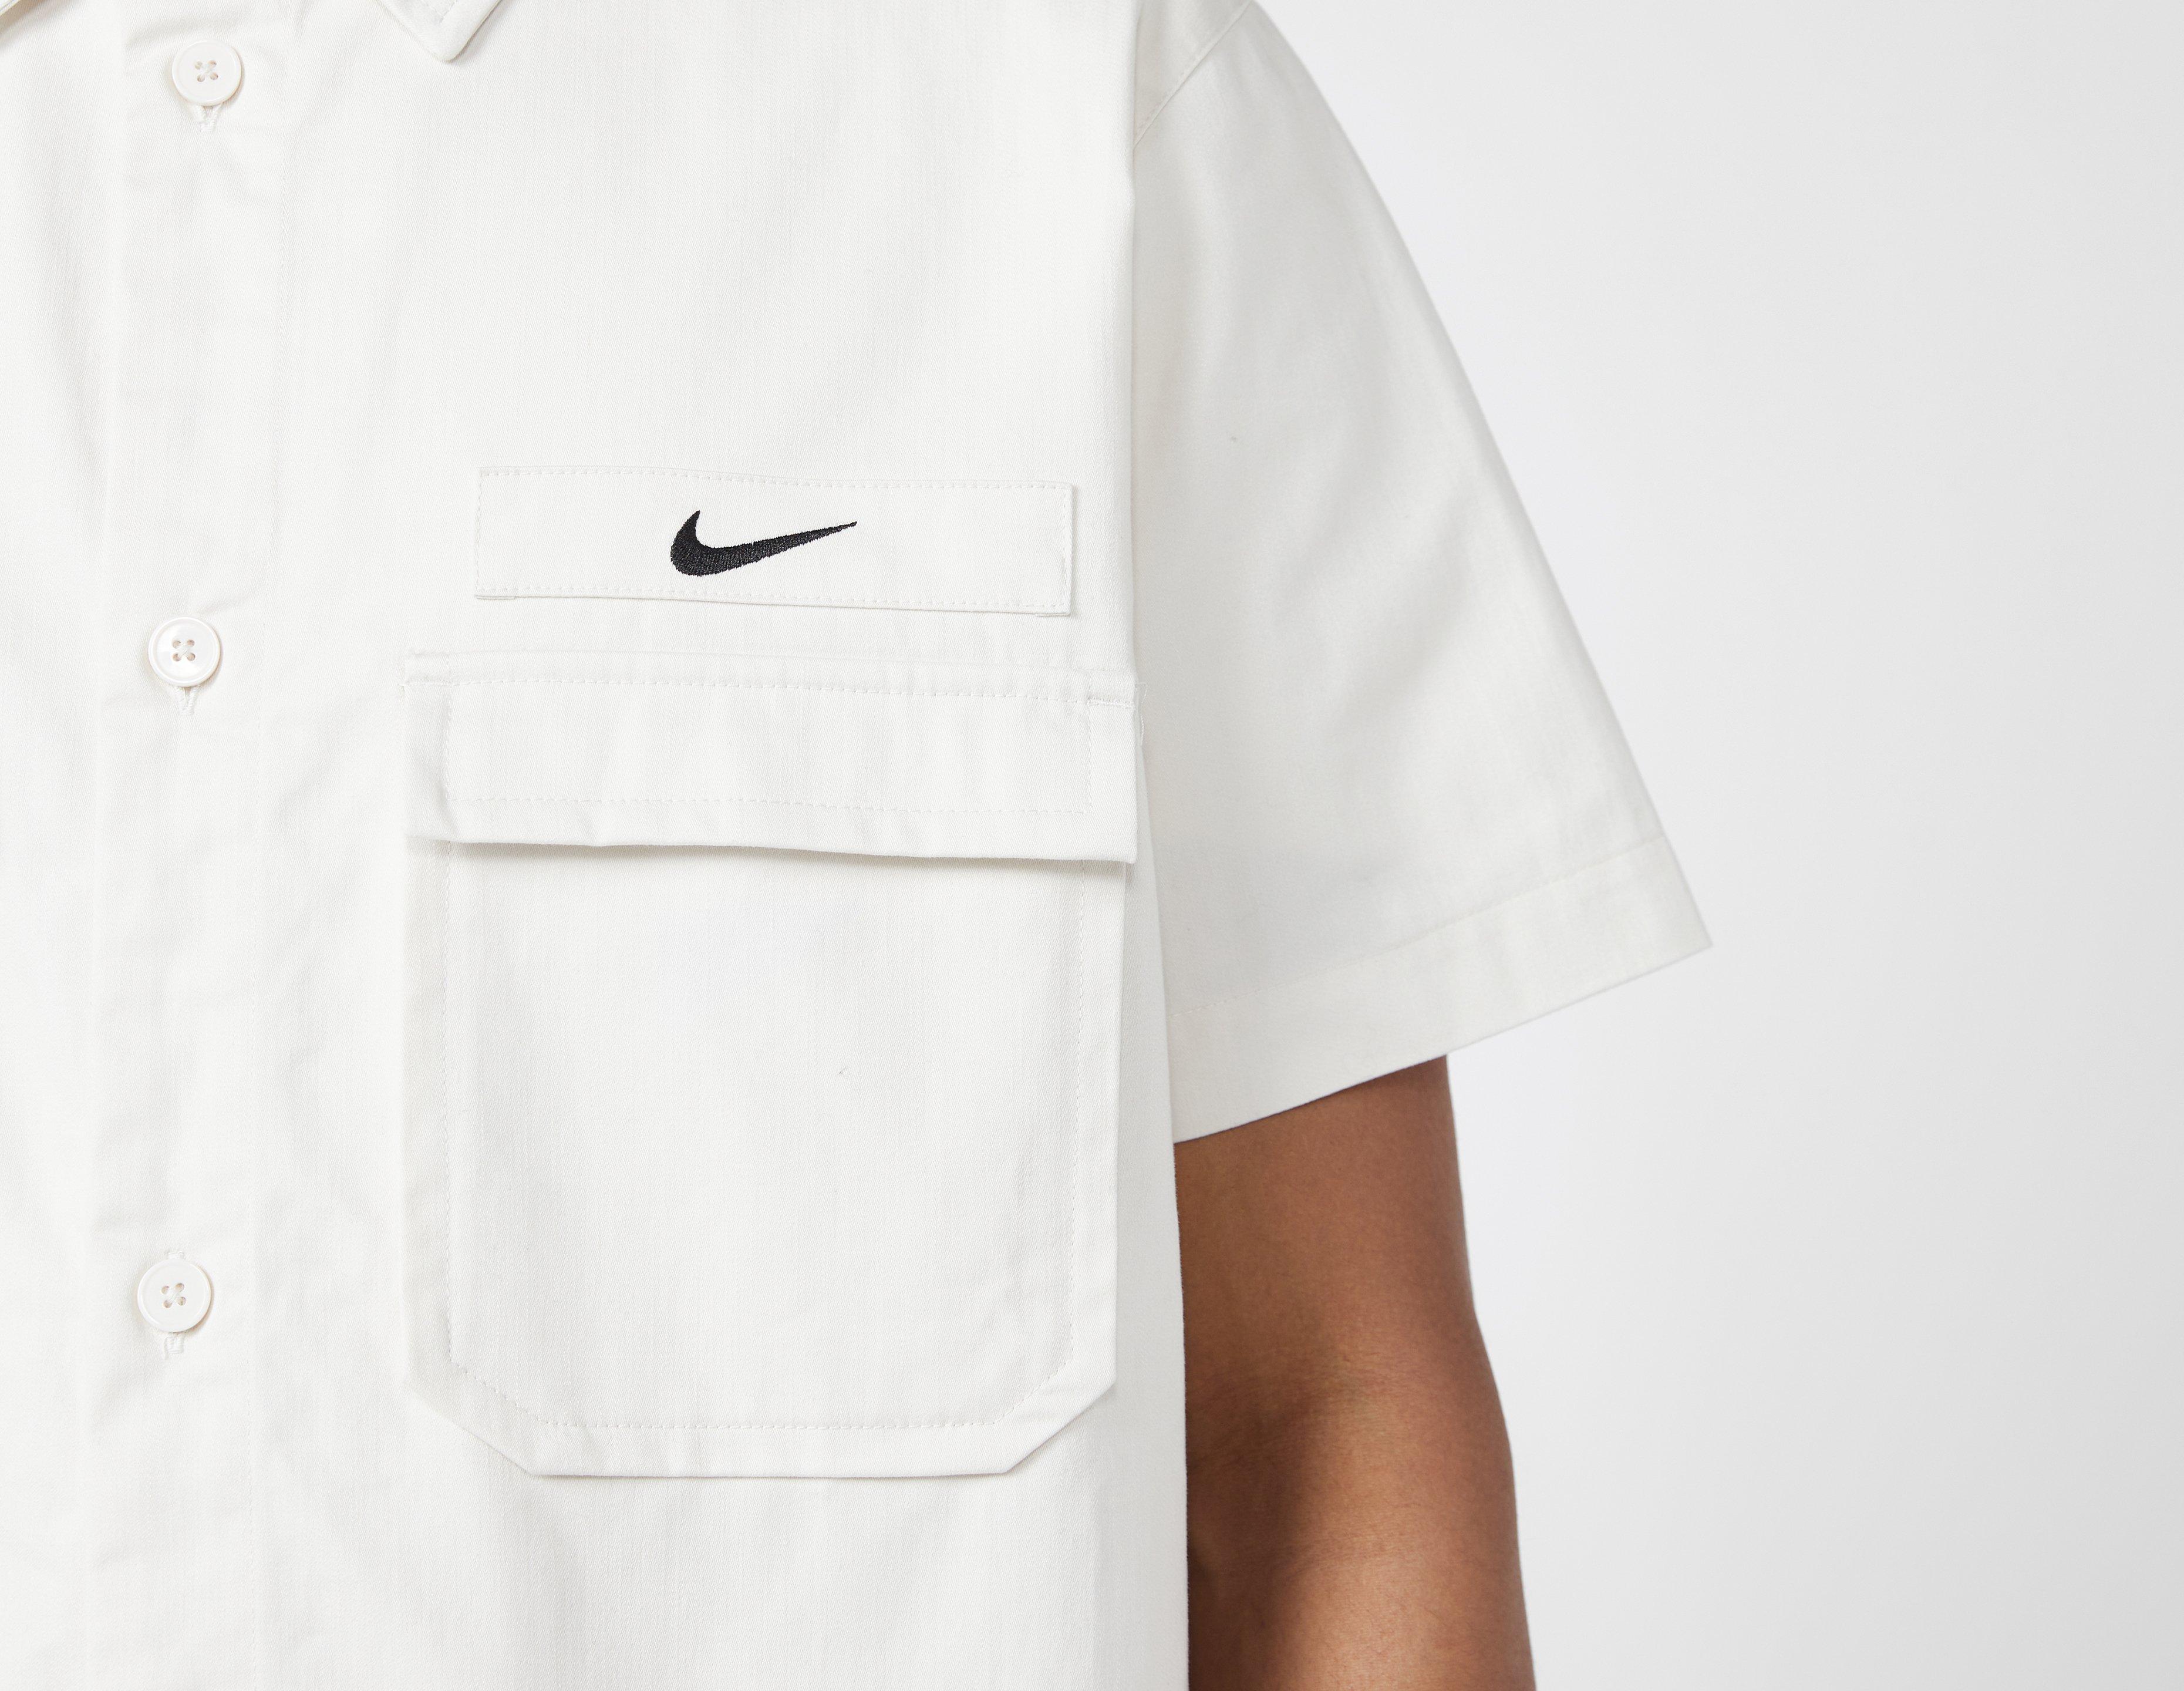 Nike Life Men's Woven Military Short-Sleeve Button-Down Shirt. Nike LU